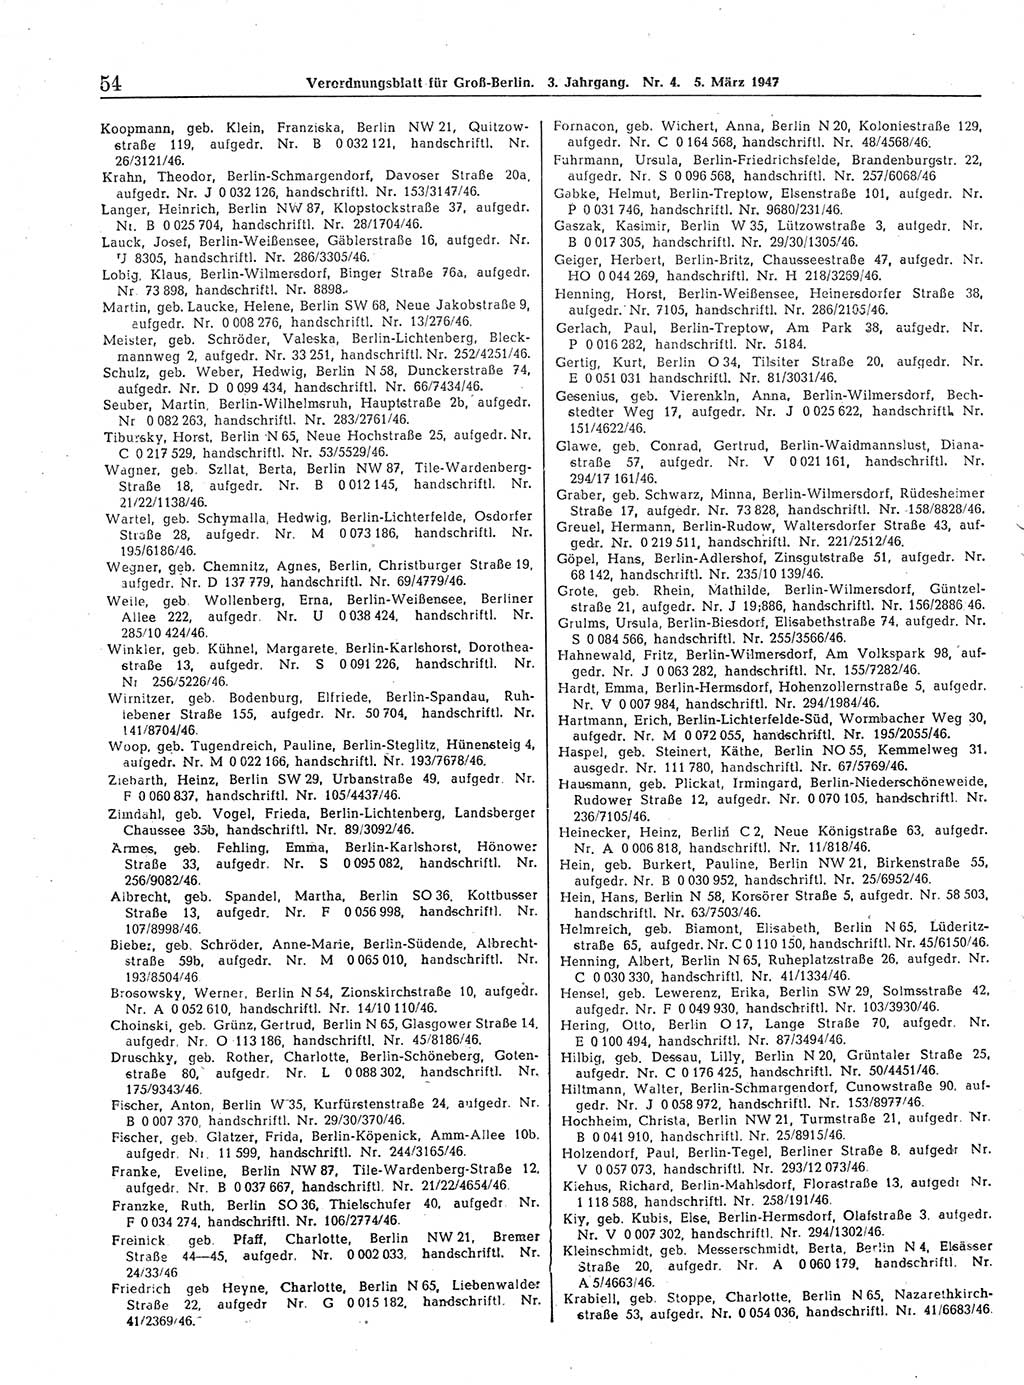 Verordnungsblatt (VOBl.) für Groß-Berlin 1947, Seite 54 (VOBl. Bln. 1947, S. 54)